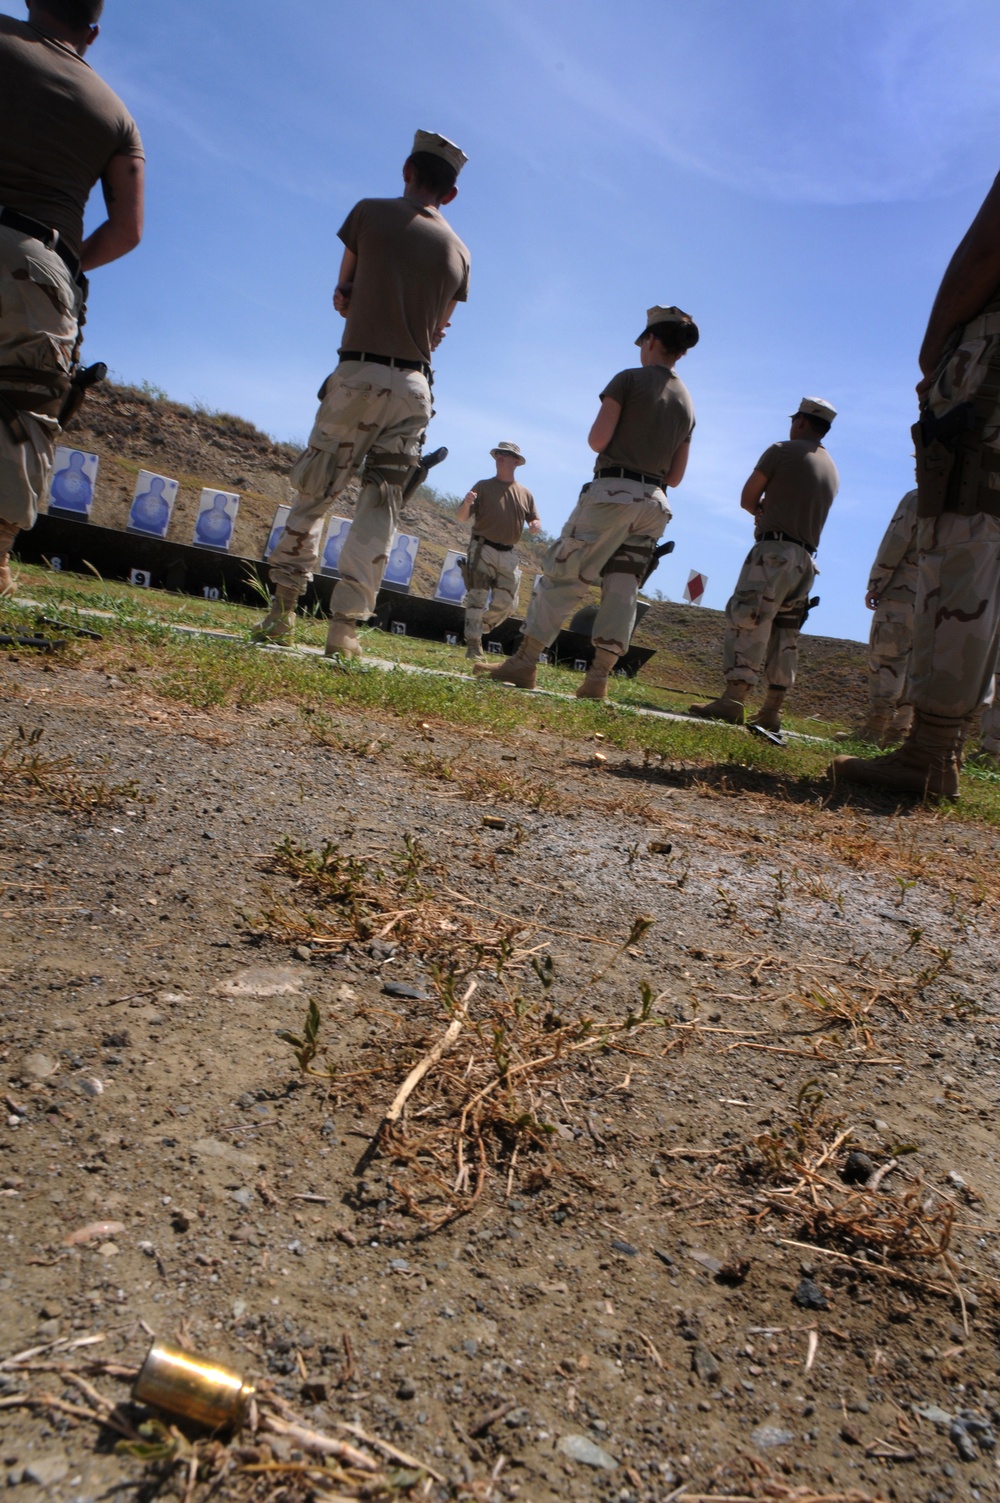 Sailors at Guantanamo Weapon Range